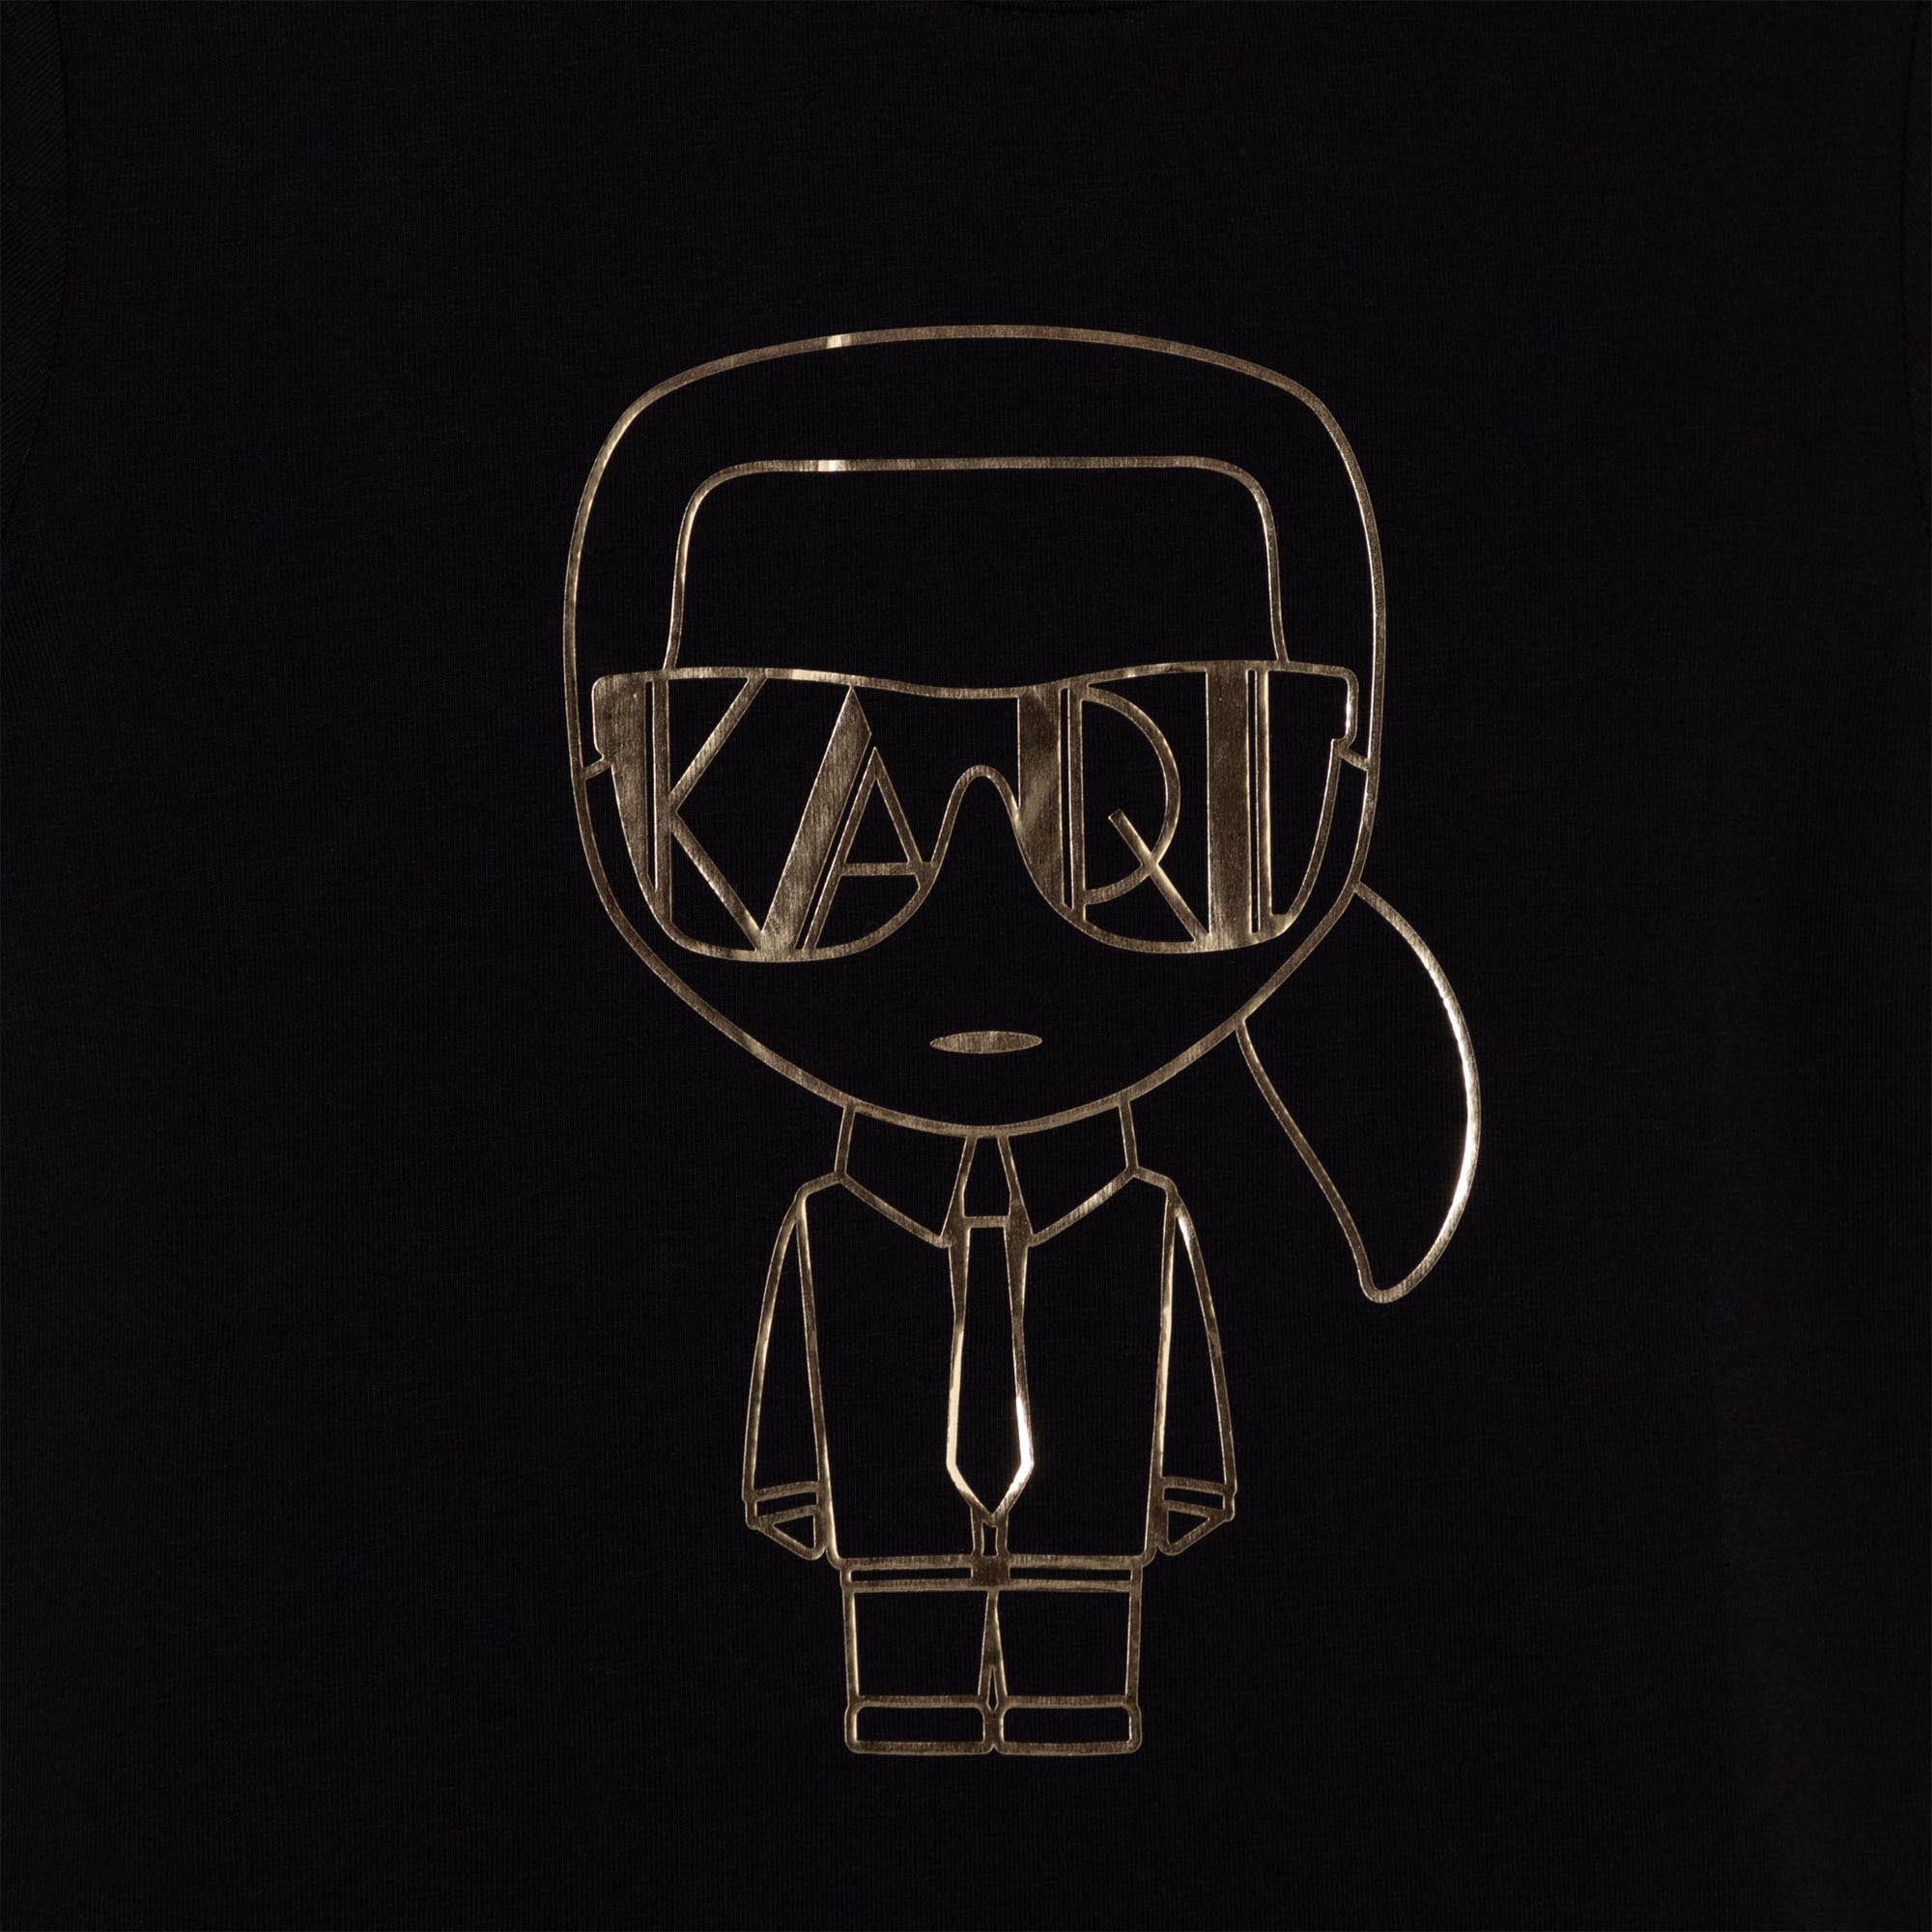 Karl Lagerfeld Kids Short Sleeves Tee-Shirt